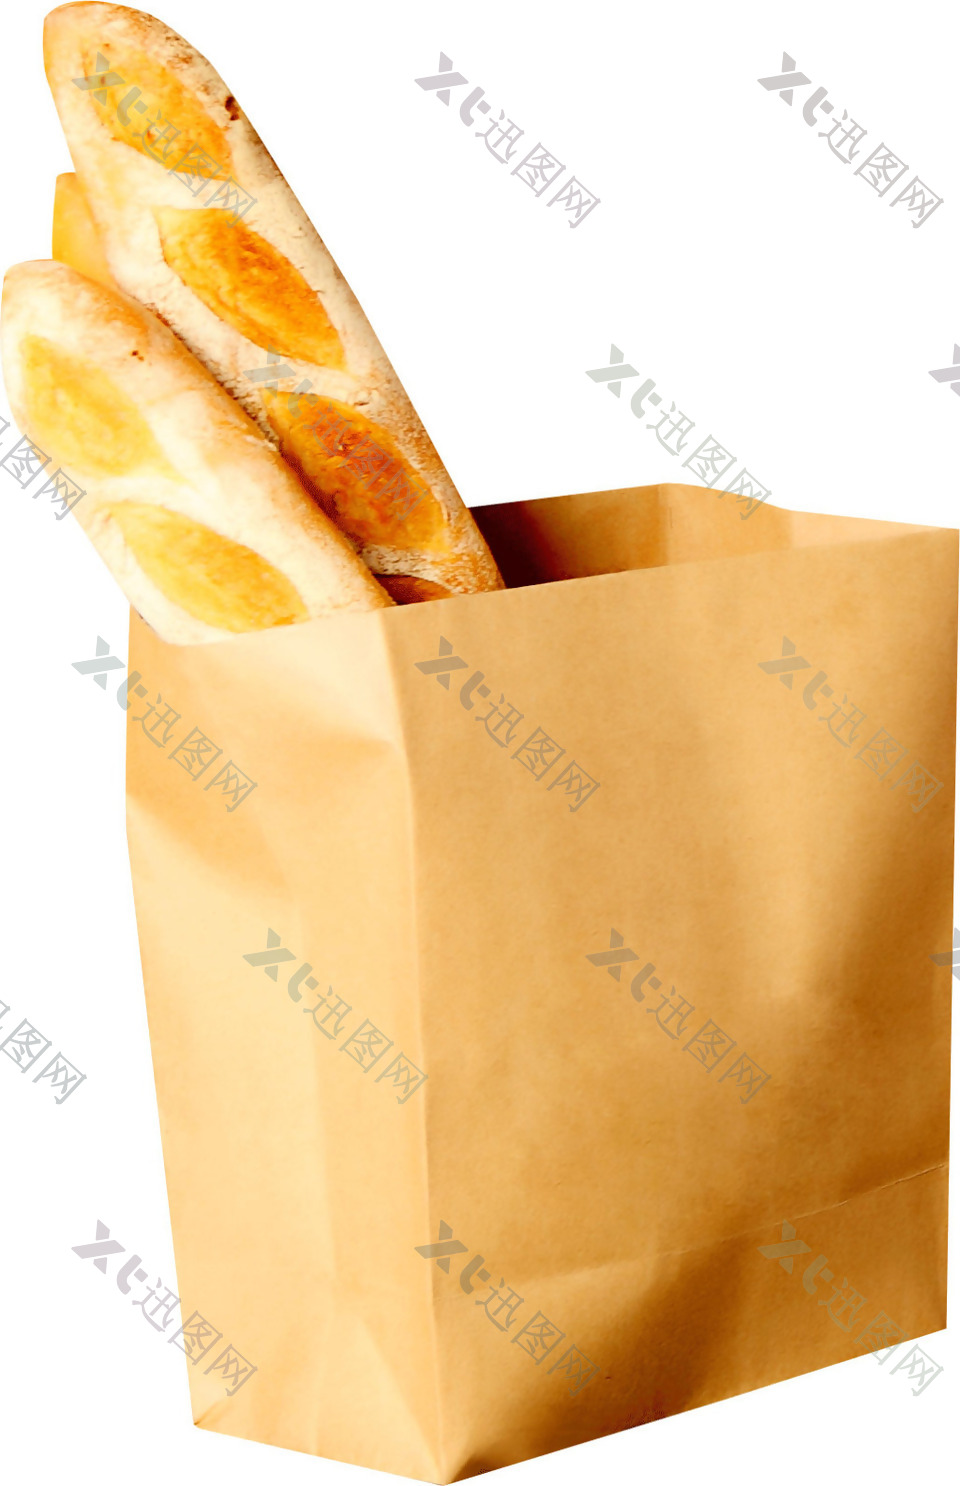 美味的面包食物png元素素材